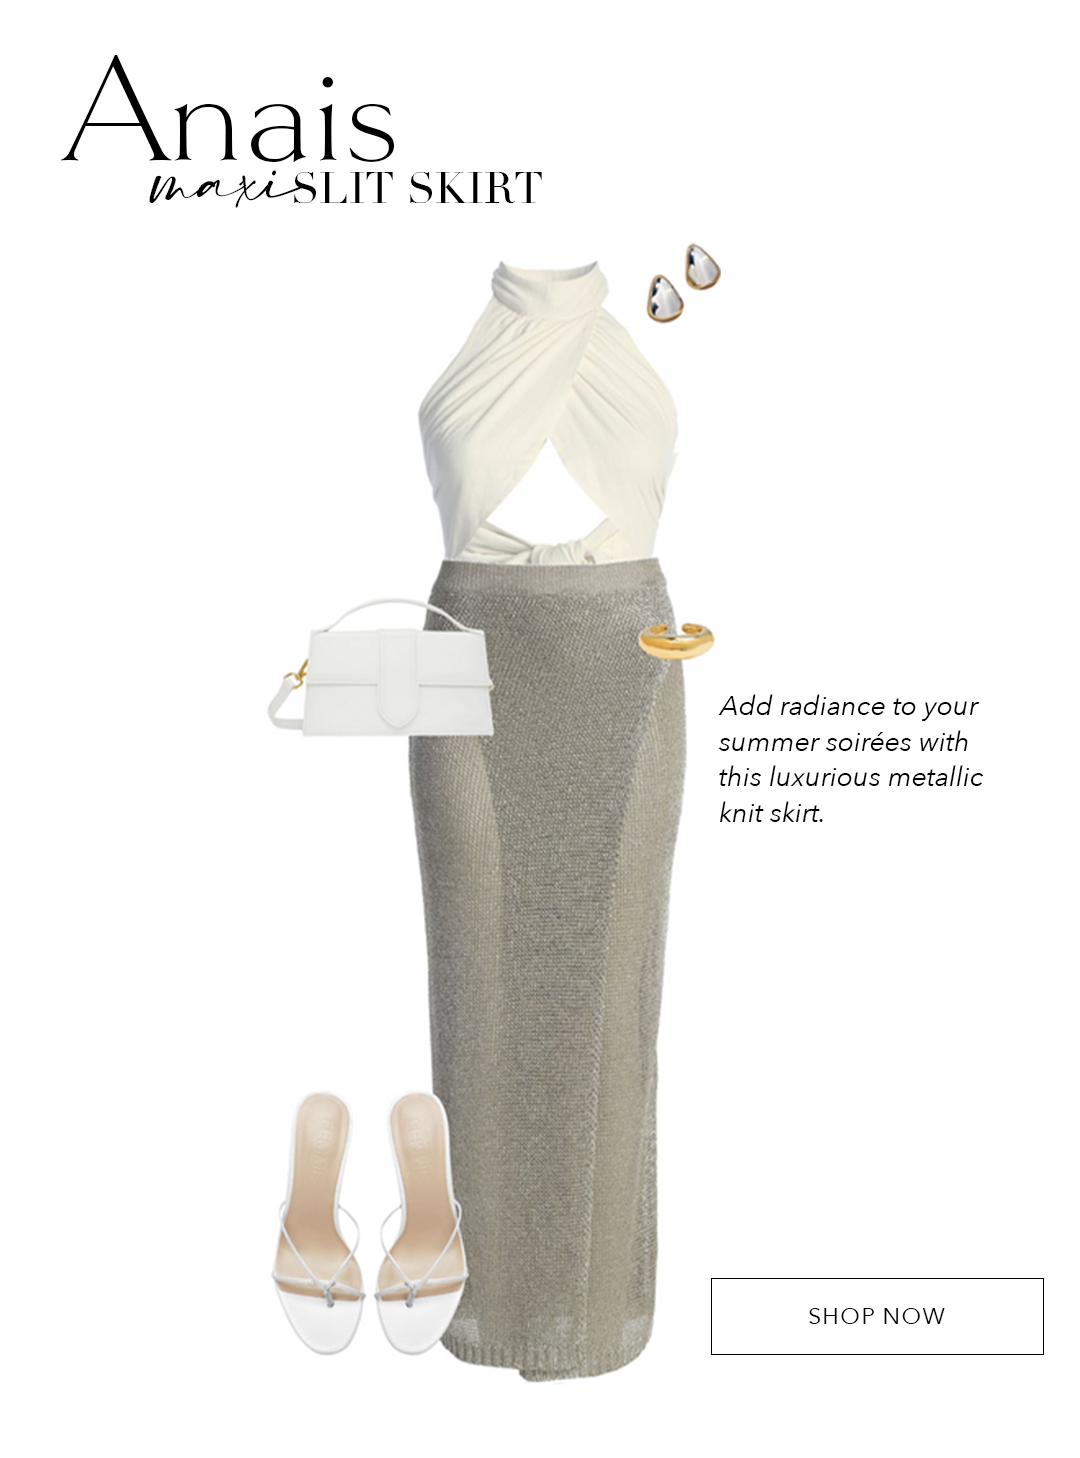 Silver Anais Maxi Slit Skirt